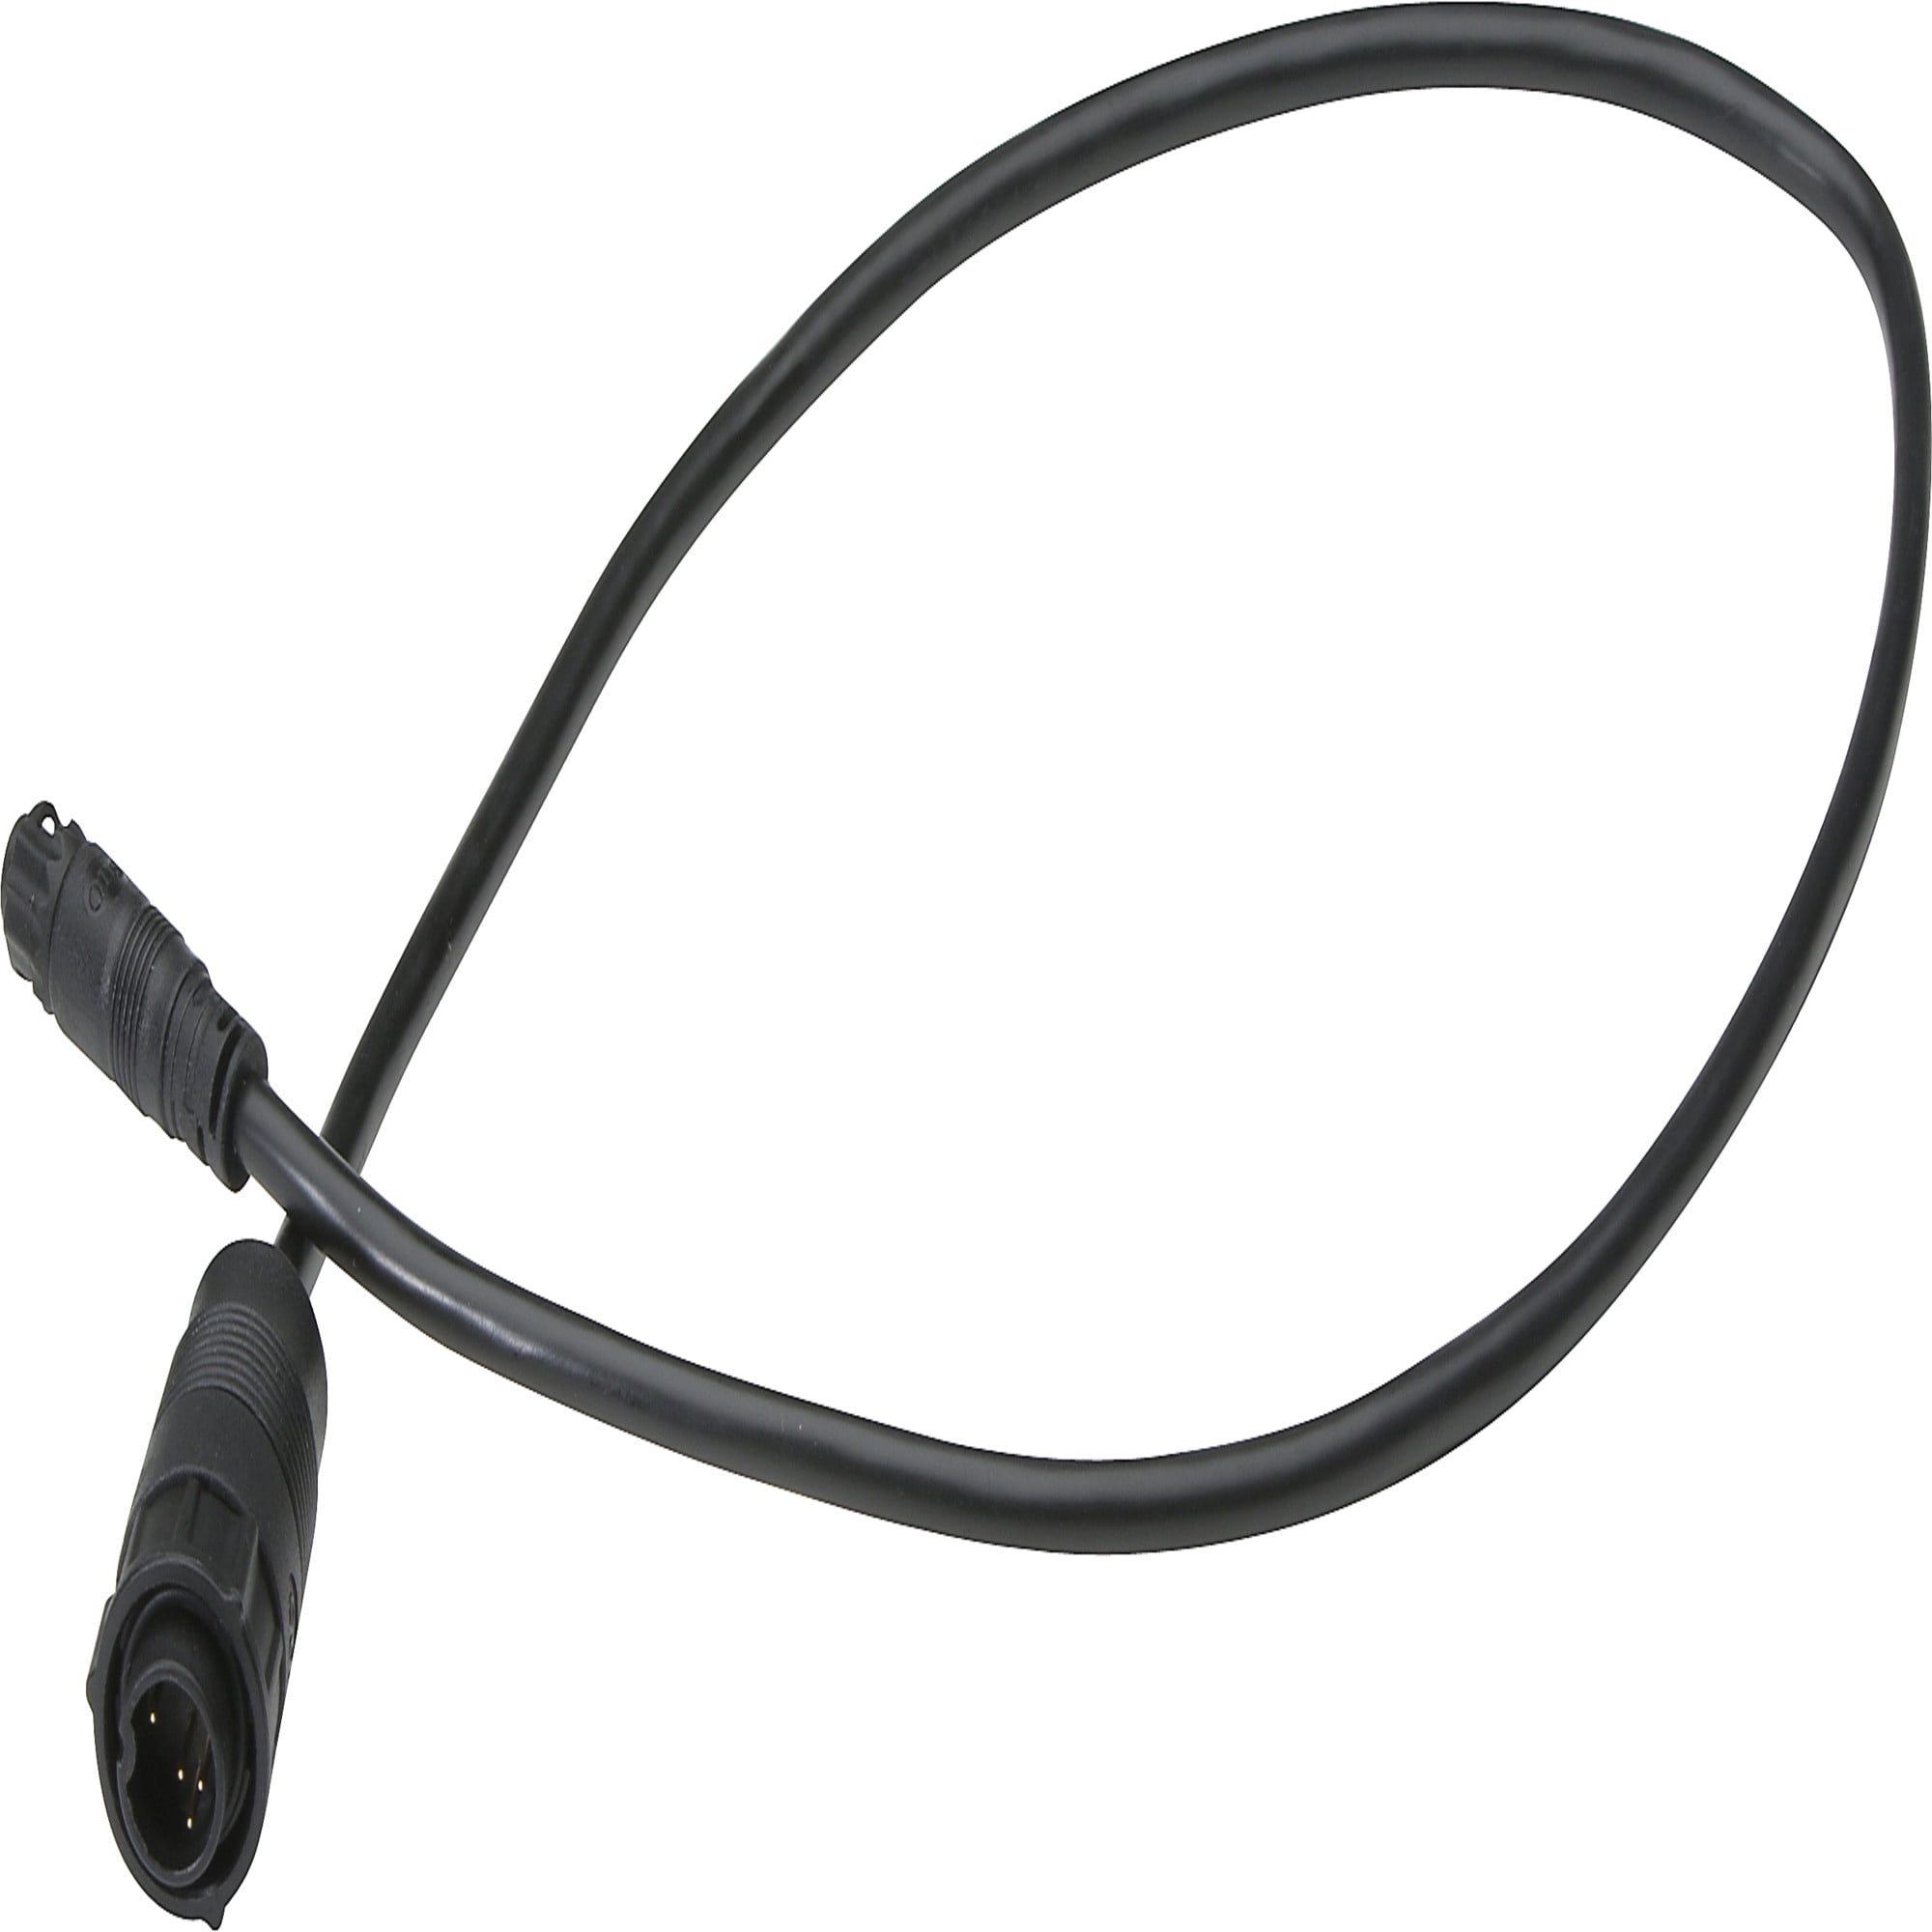 MotorGuide 8M4004174 Lowrance 9-Pin HD+ Sonar Adapter Cable — Connects Lowrance  9-Pin to MotorGuide Blue/Gray 7-Pin Sonar 